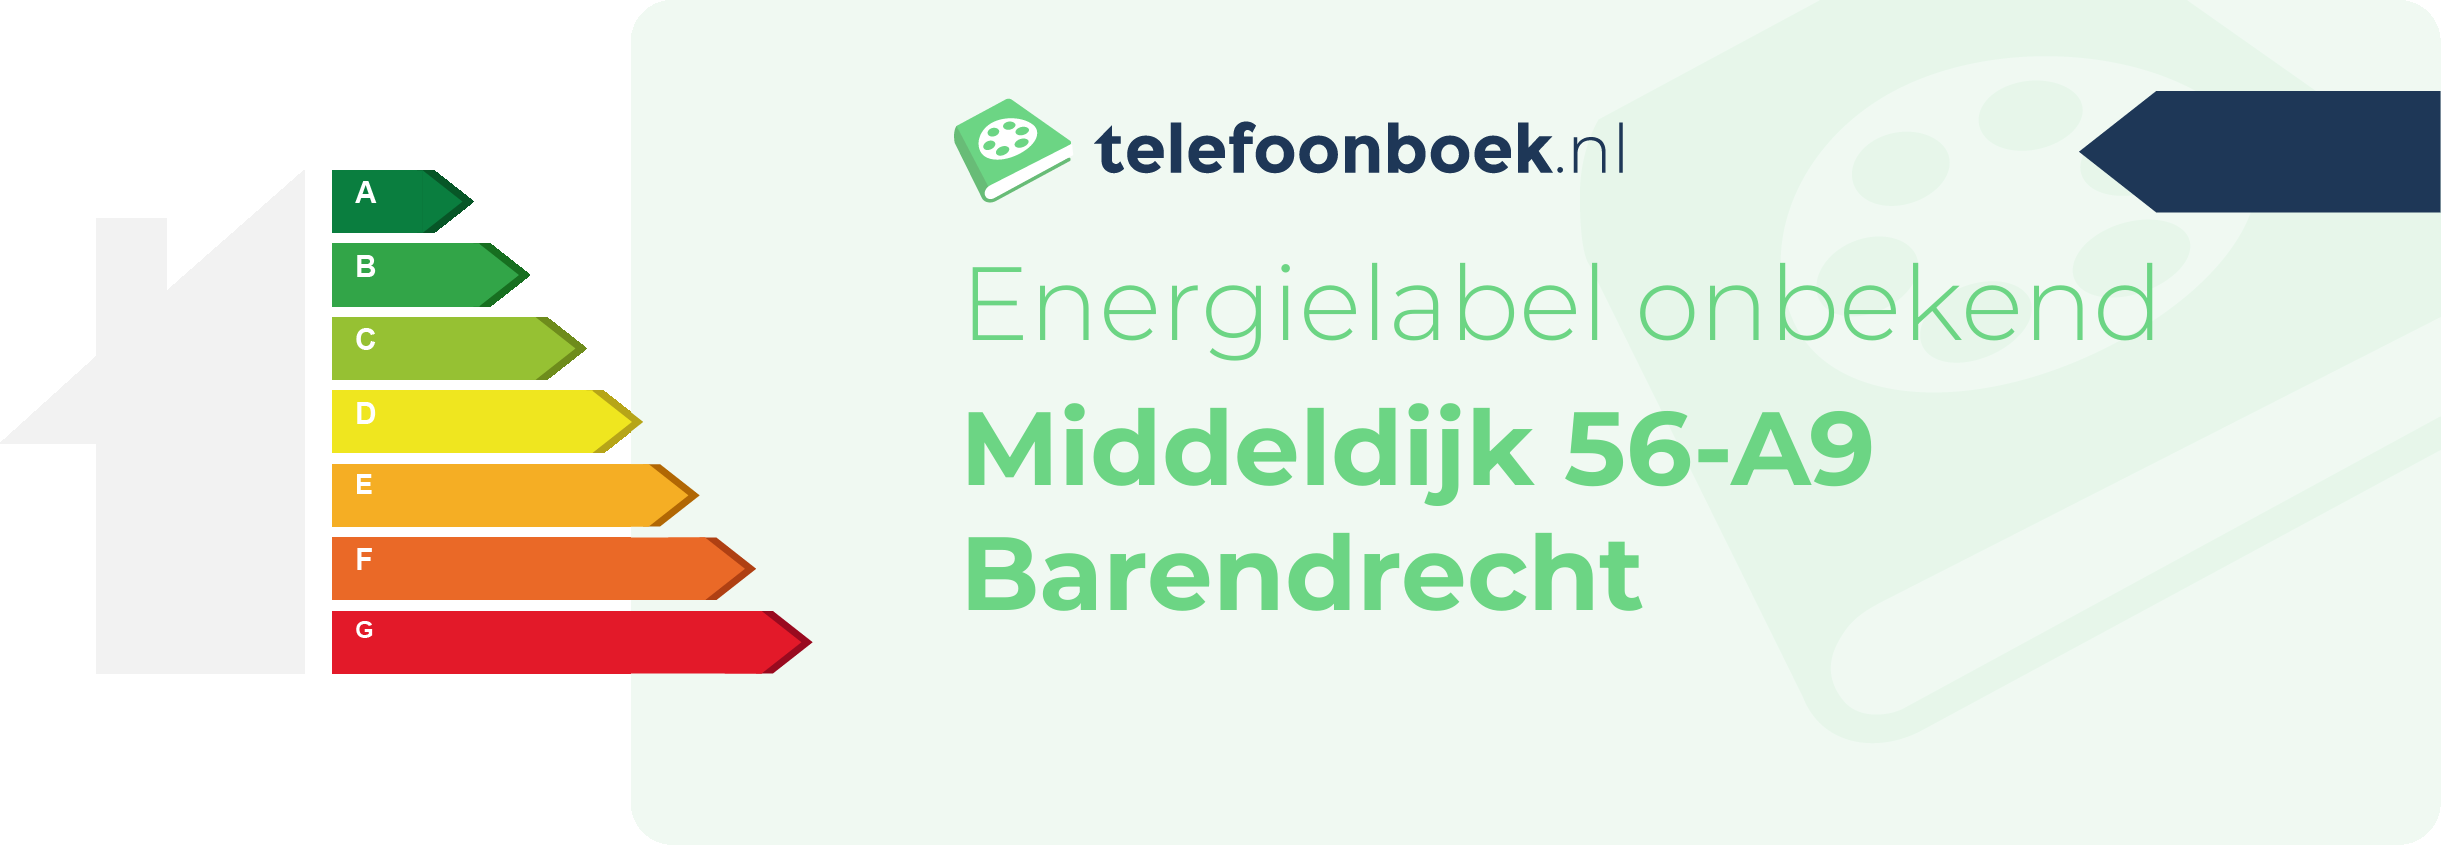 Energielabel Middeldijk 56-A9 Barendrecht